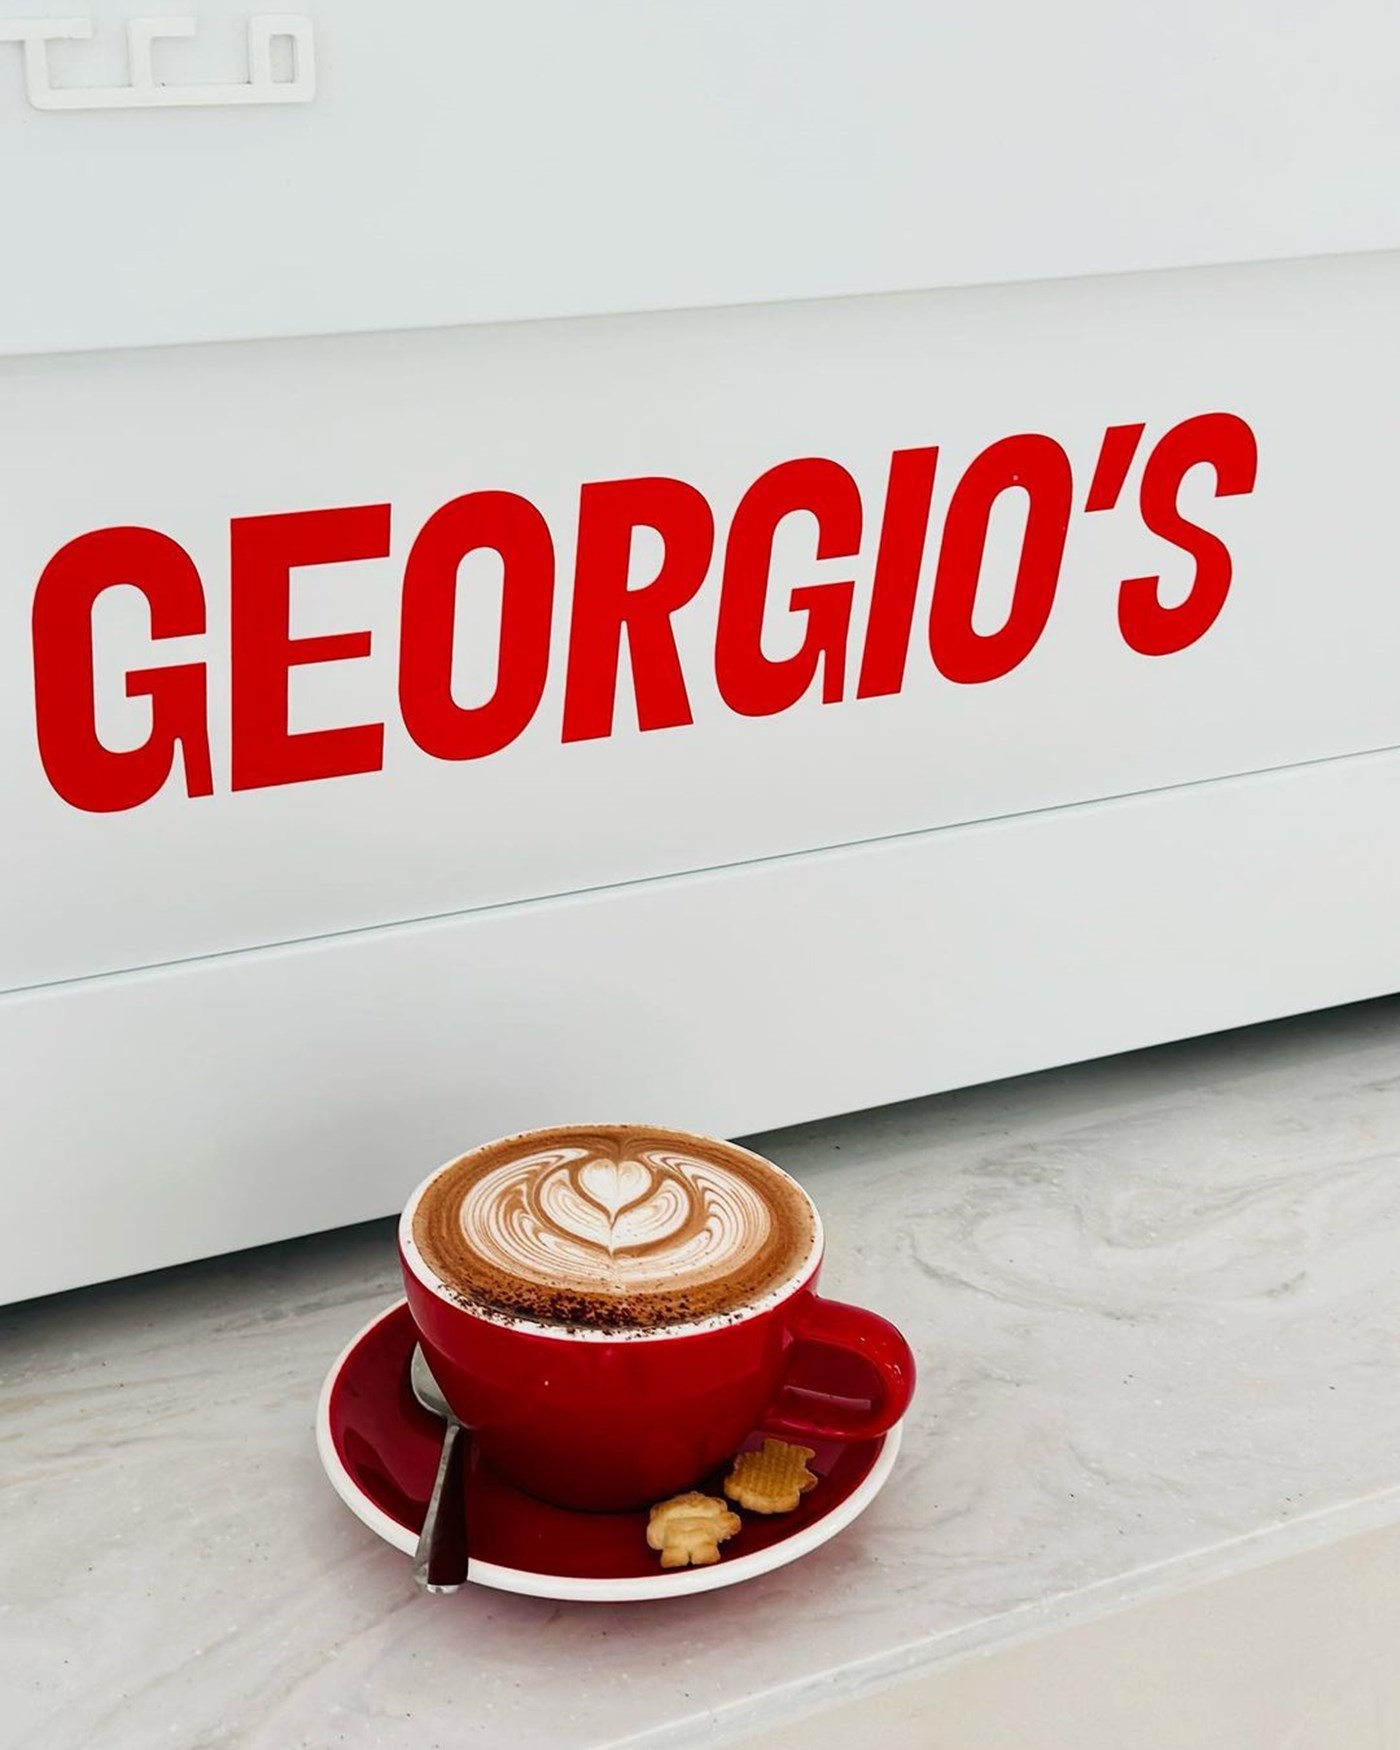 Georgio’s Cafe